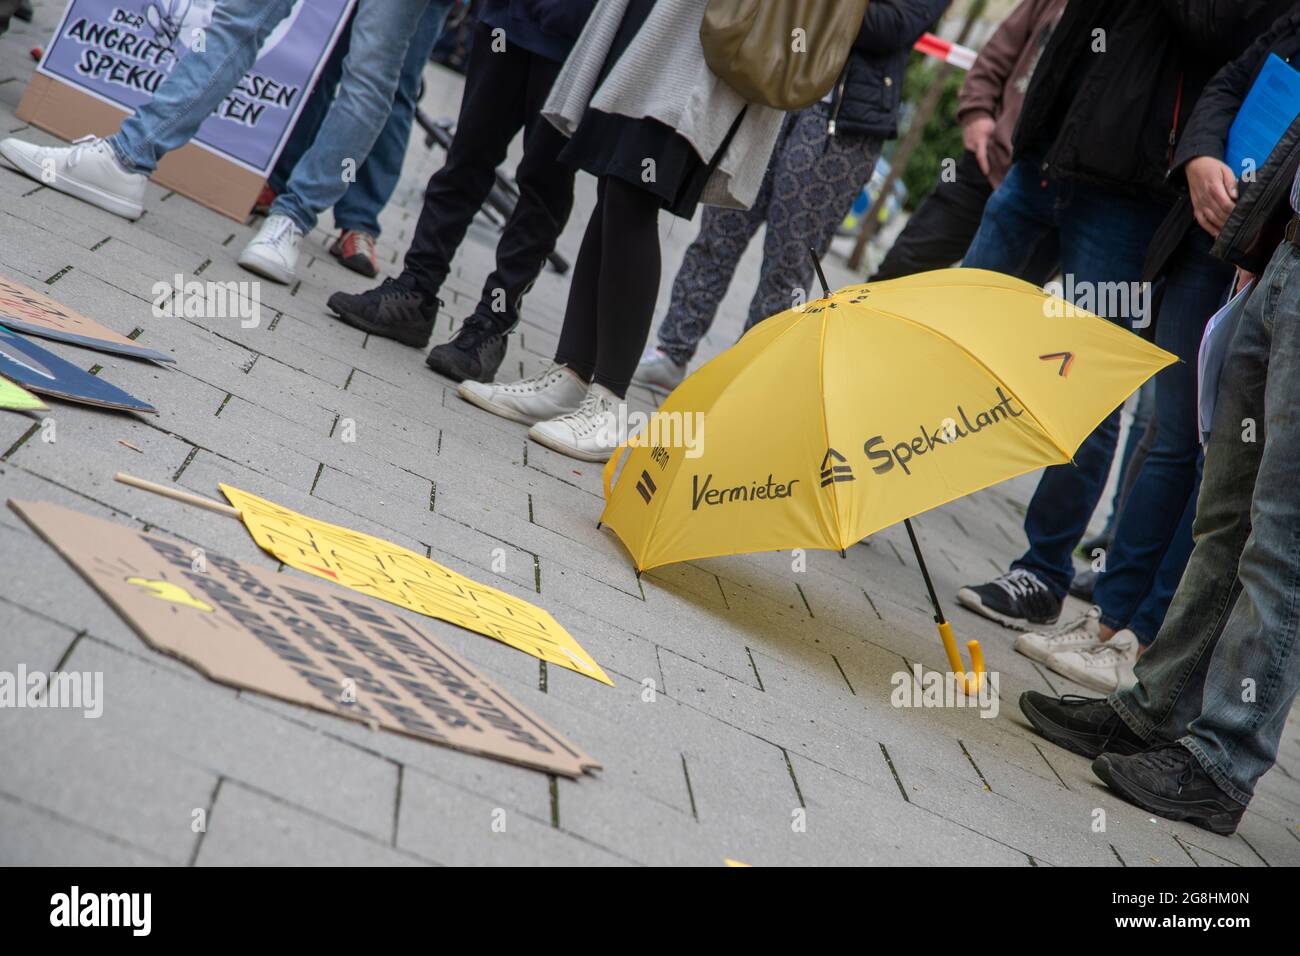 Regenschirm gegn Spekulanten. Mieterinnen und Mieter der Dawonia ehemals  GBW haben sich am 20. Juni zu einem proteste gegen steigende Mieten und  Entmietung von Sozialwohnungen und nicht nur verjammelt. Es sprachen  verschiedene